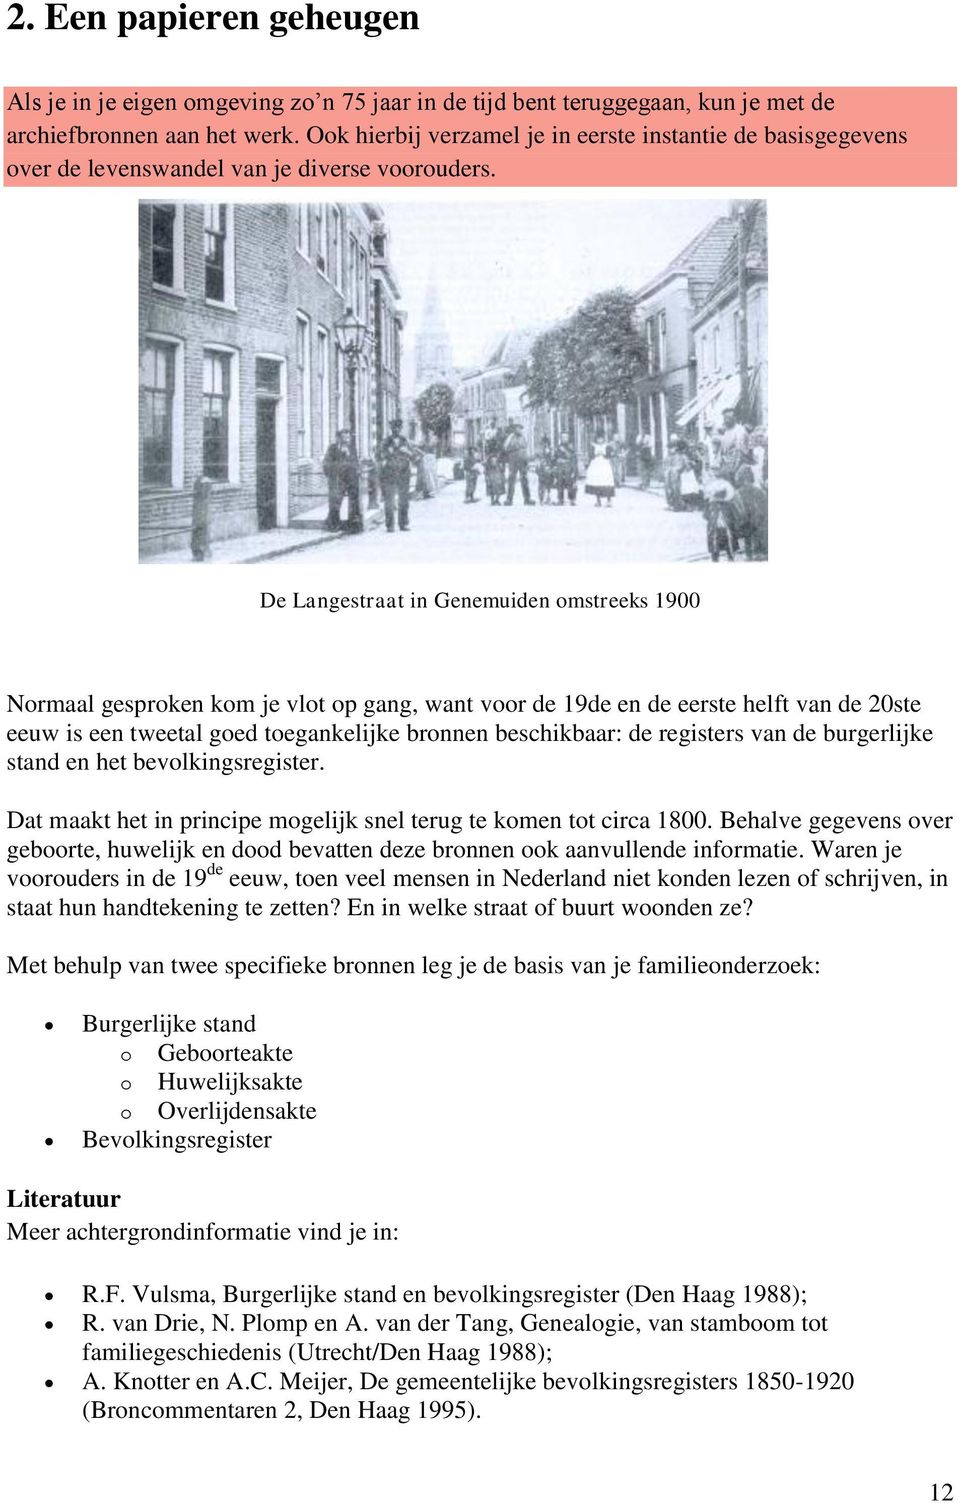 De Langestraat in Genemuiden omstreeks 1900 Normaal gesproken kom je vlot op gang, want voor de 19de en de eerste helft van de 20ste eeuw is een tweetal goed toegankelijke bronnen beschikbaar: de